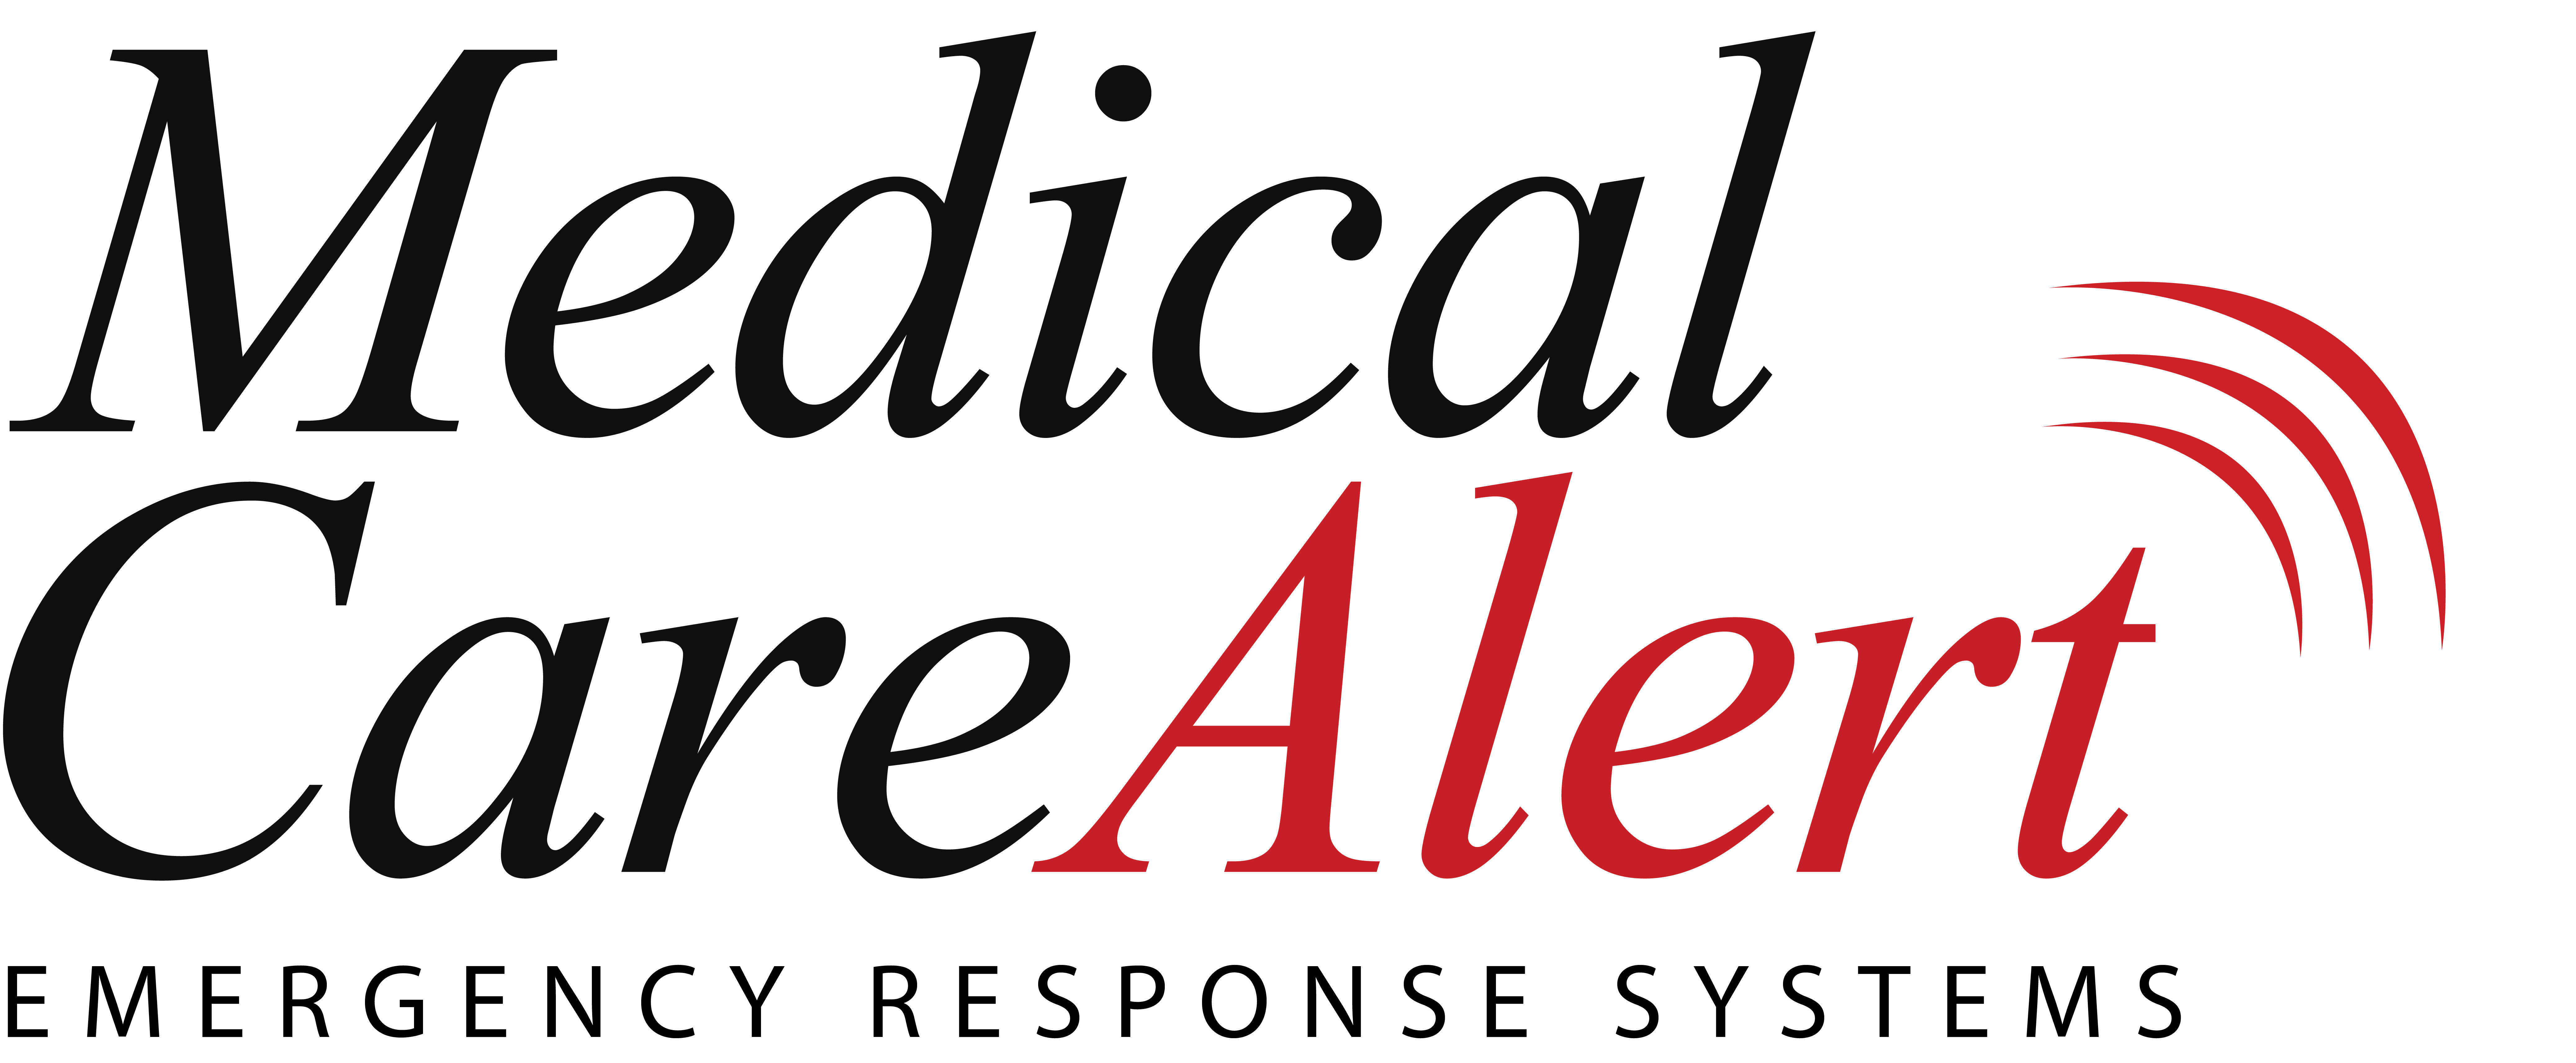 Medical Care Alert (Tier 4)